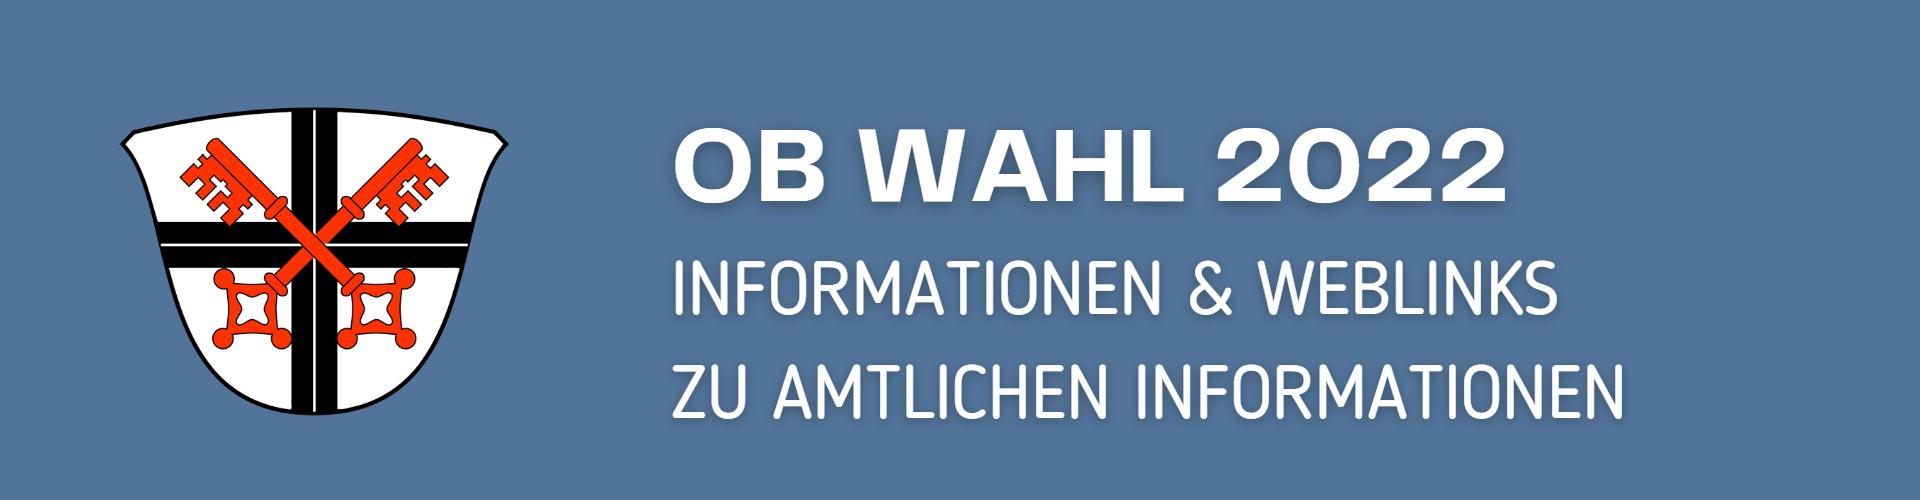 OB Wahl 2022 Banner